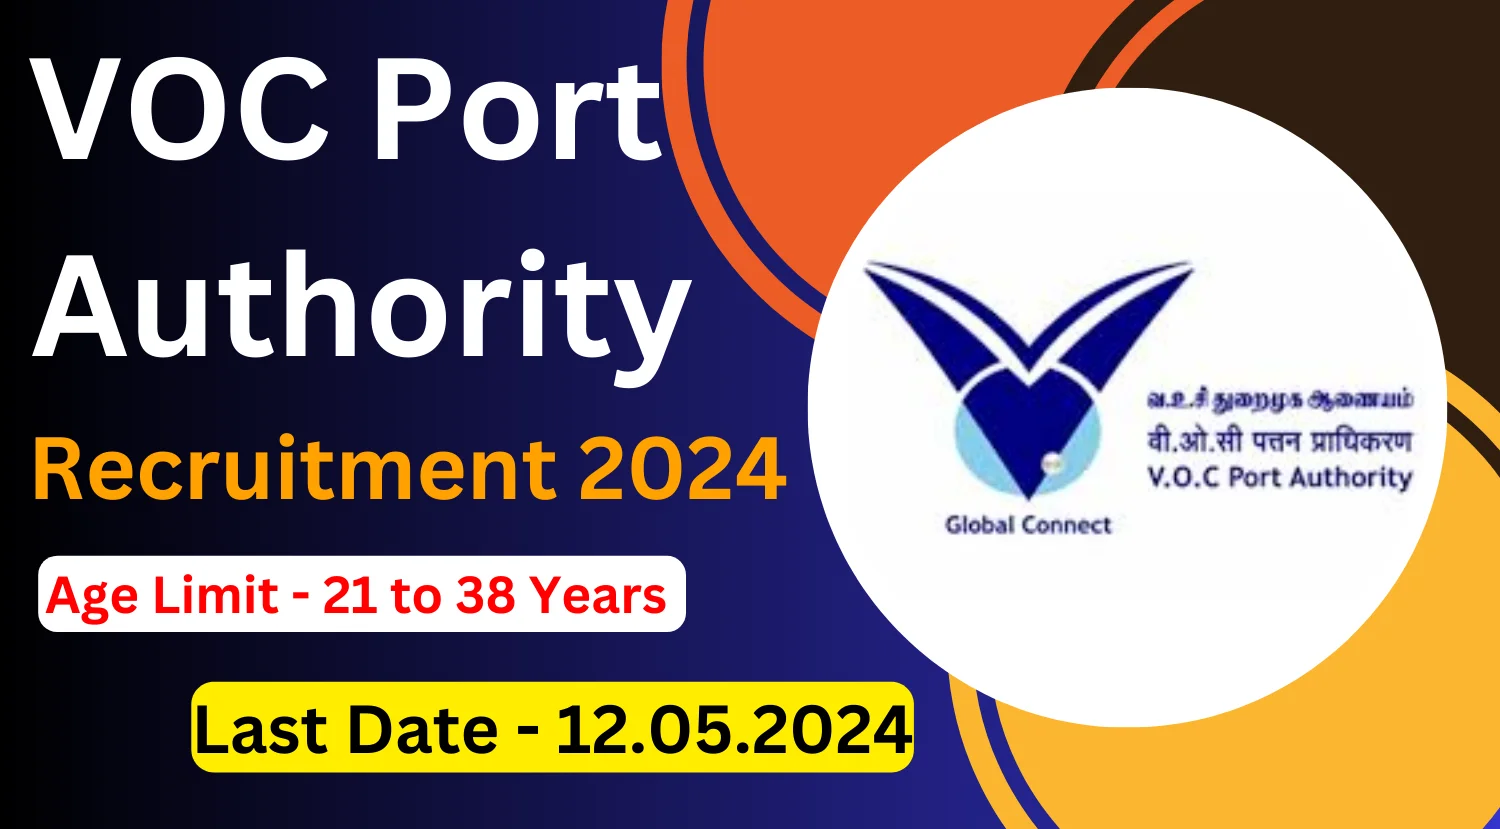 VOC Port Authority Recruitment 2024 Notification Out